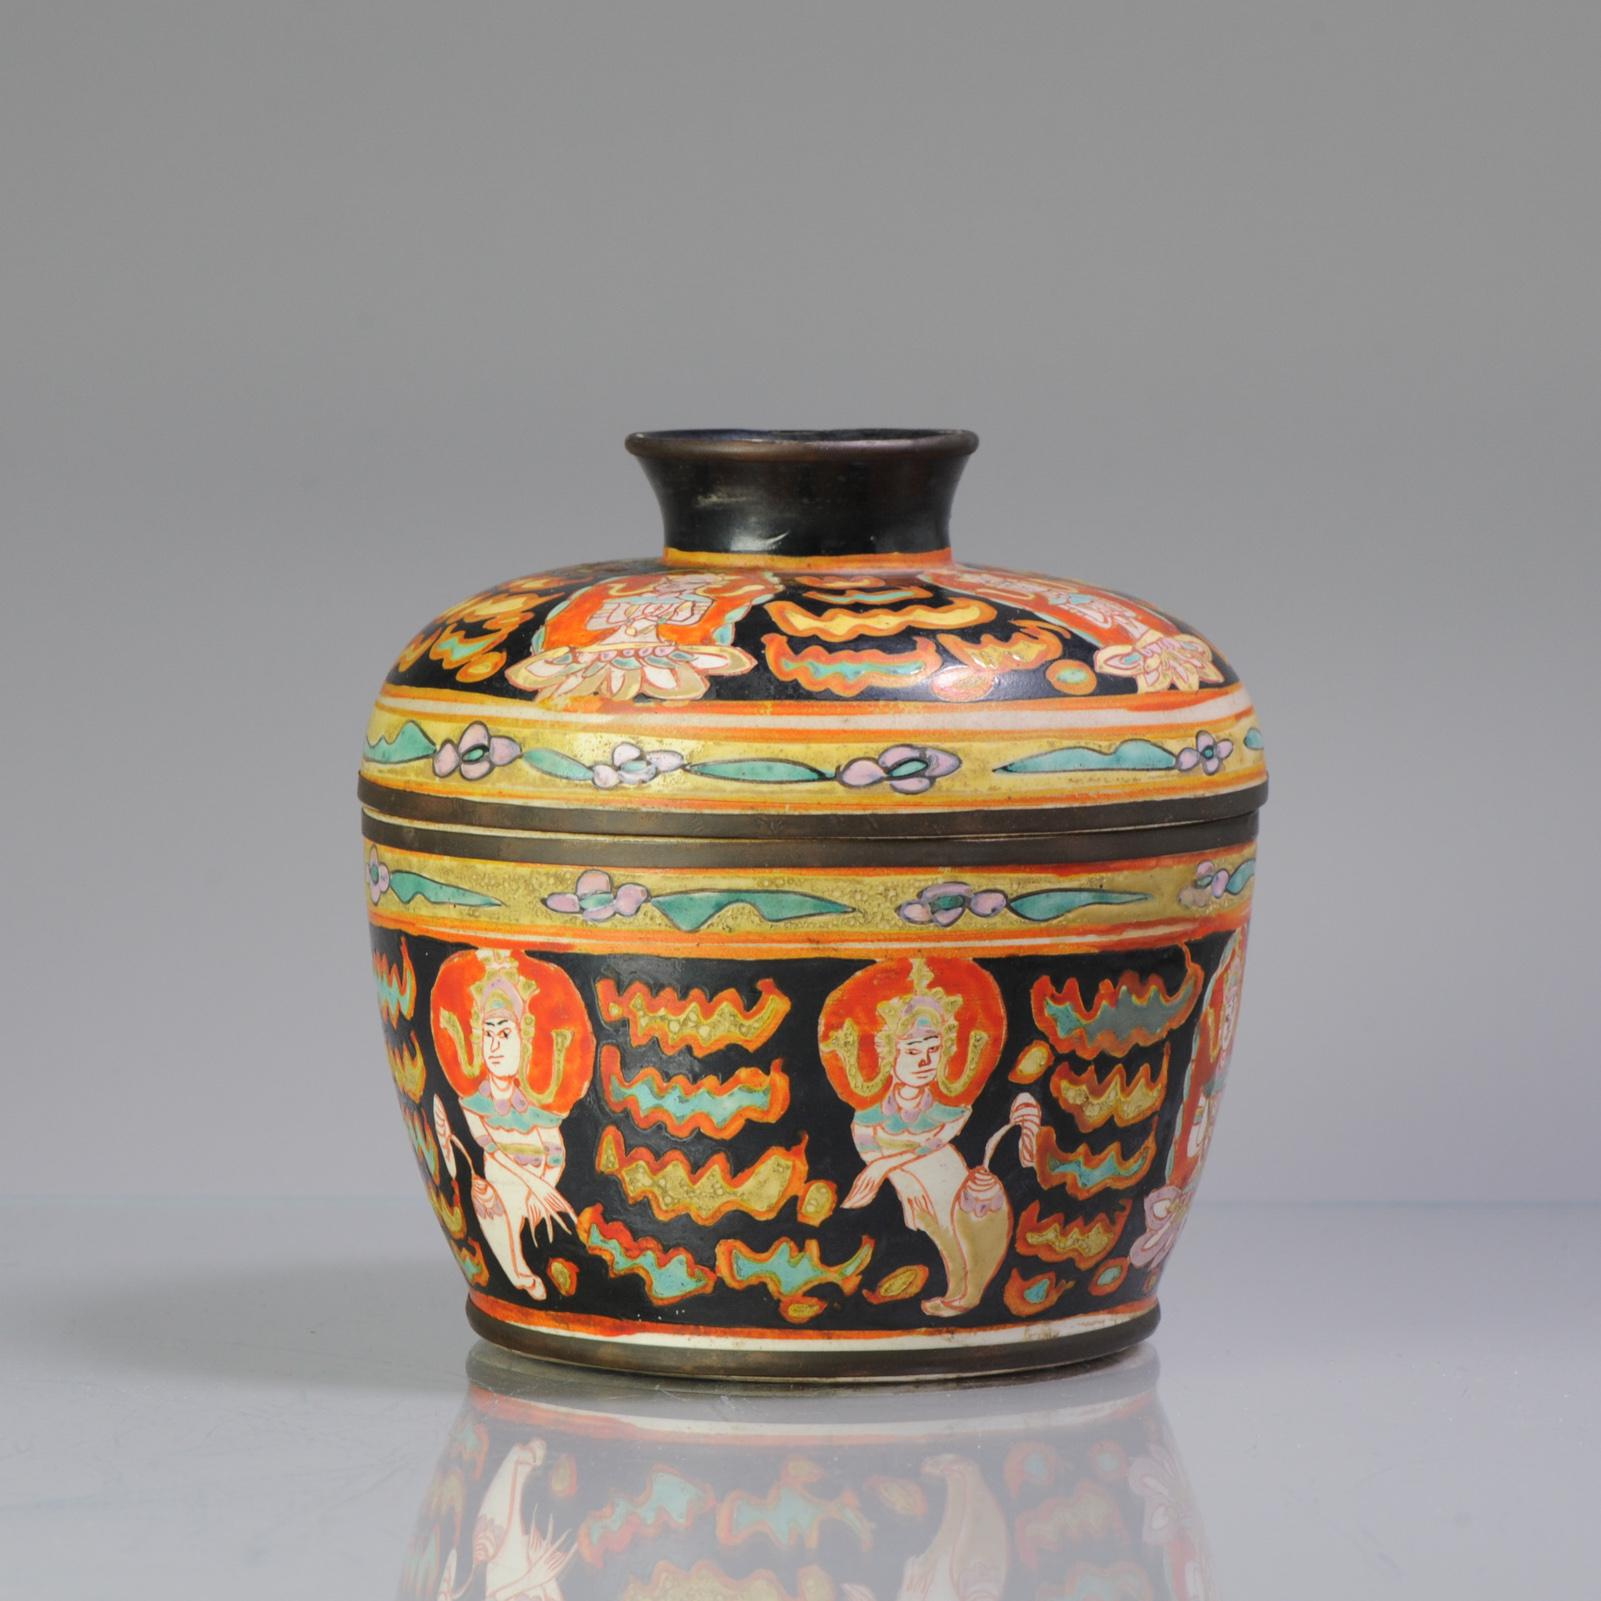 Antique Ca 1900 Chinese Porcelain Lidded Jar Bencharong Thailand Enamels 2